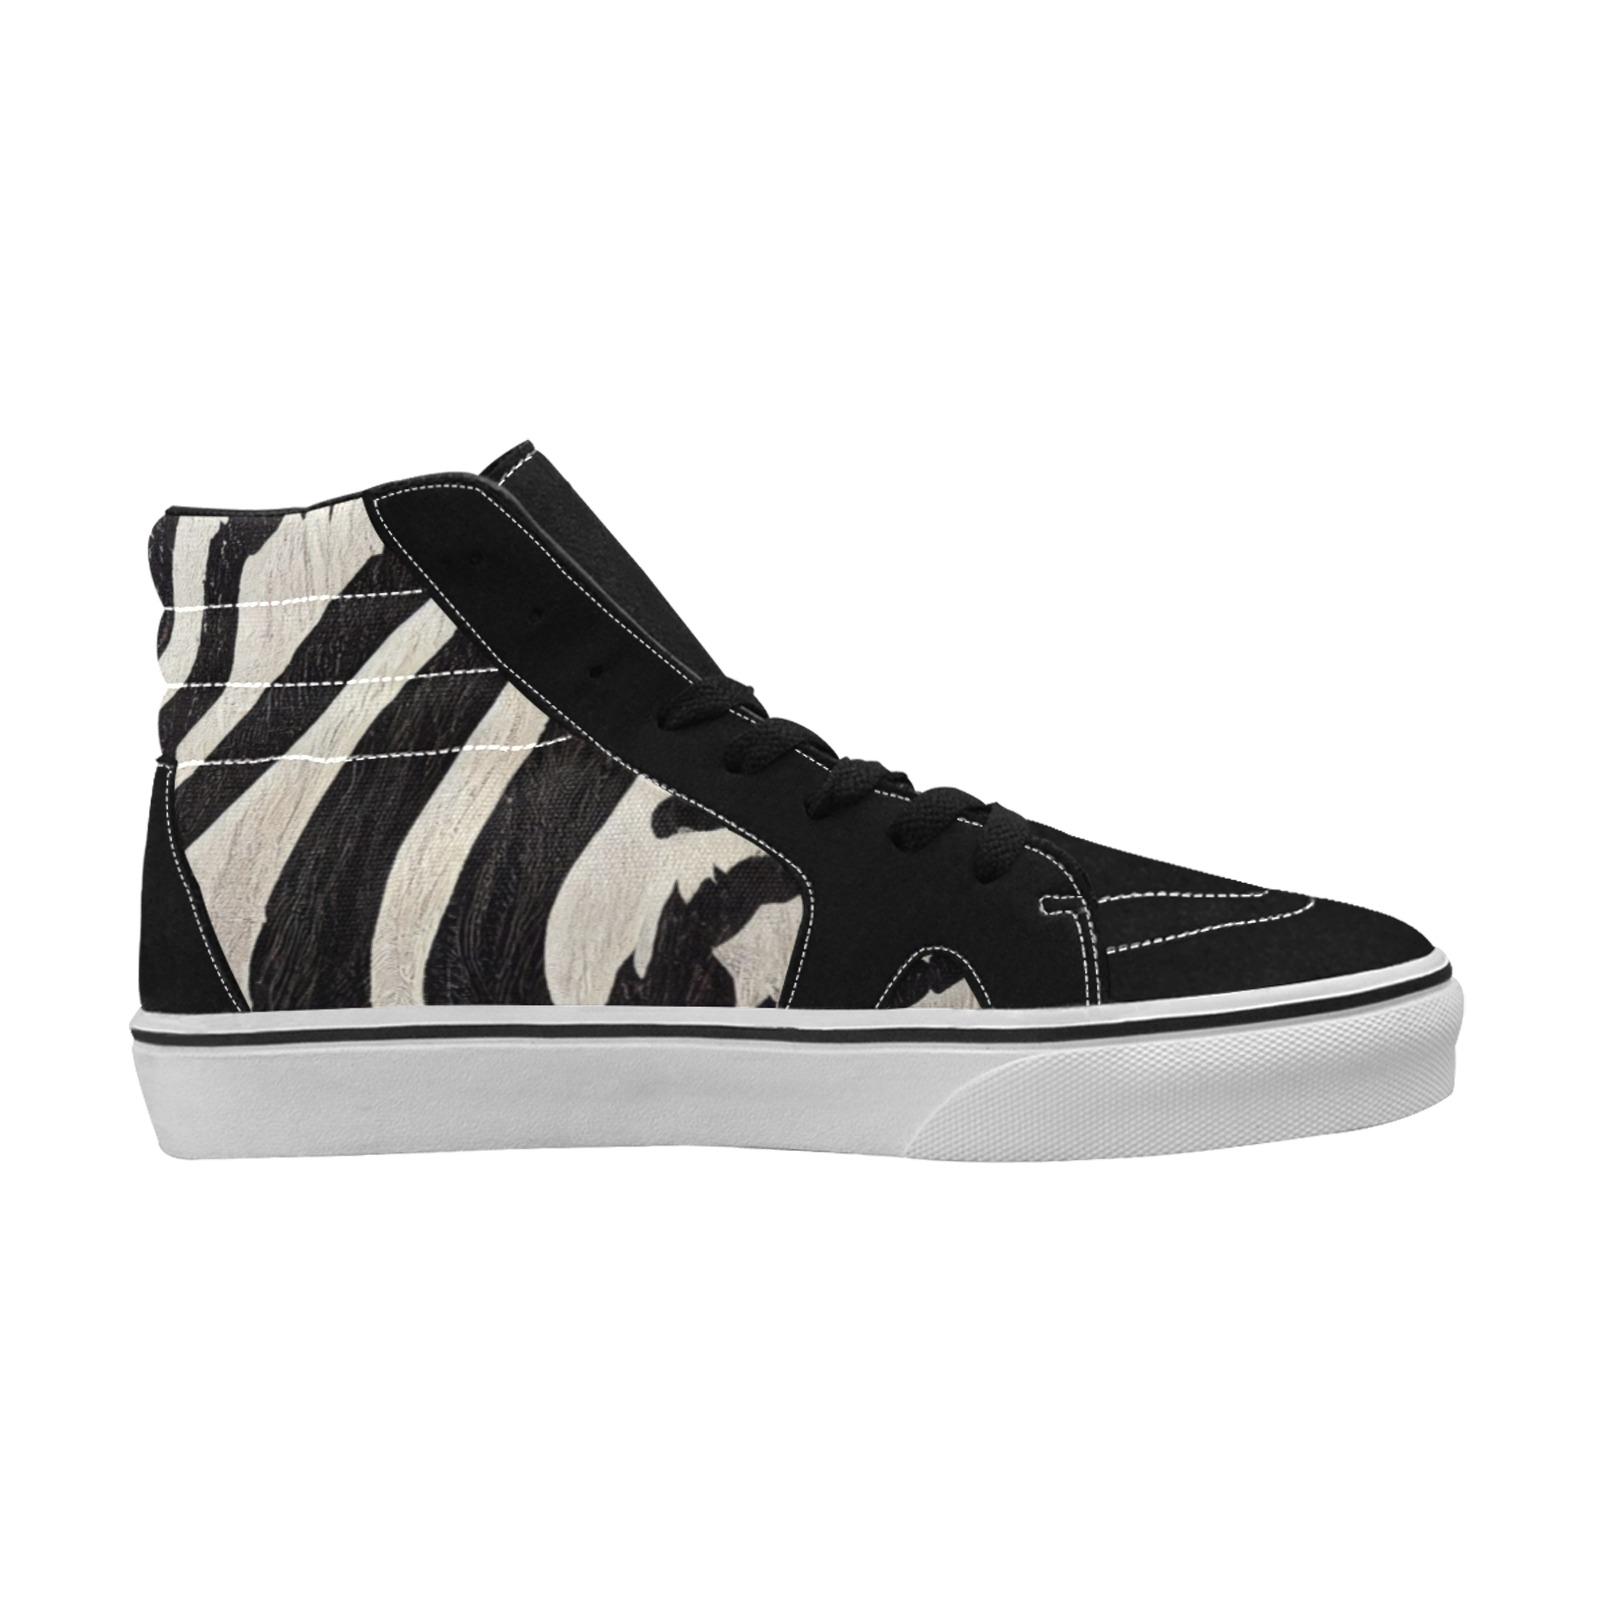 zebra print 5, black and white Men's High Top Skateboarding Shoes (Model E001-1)